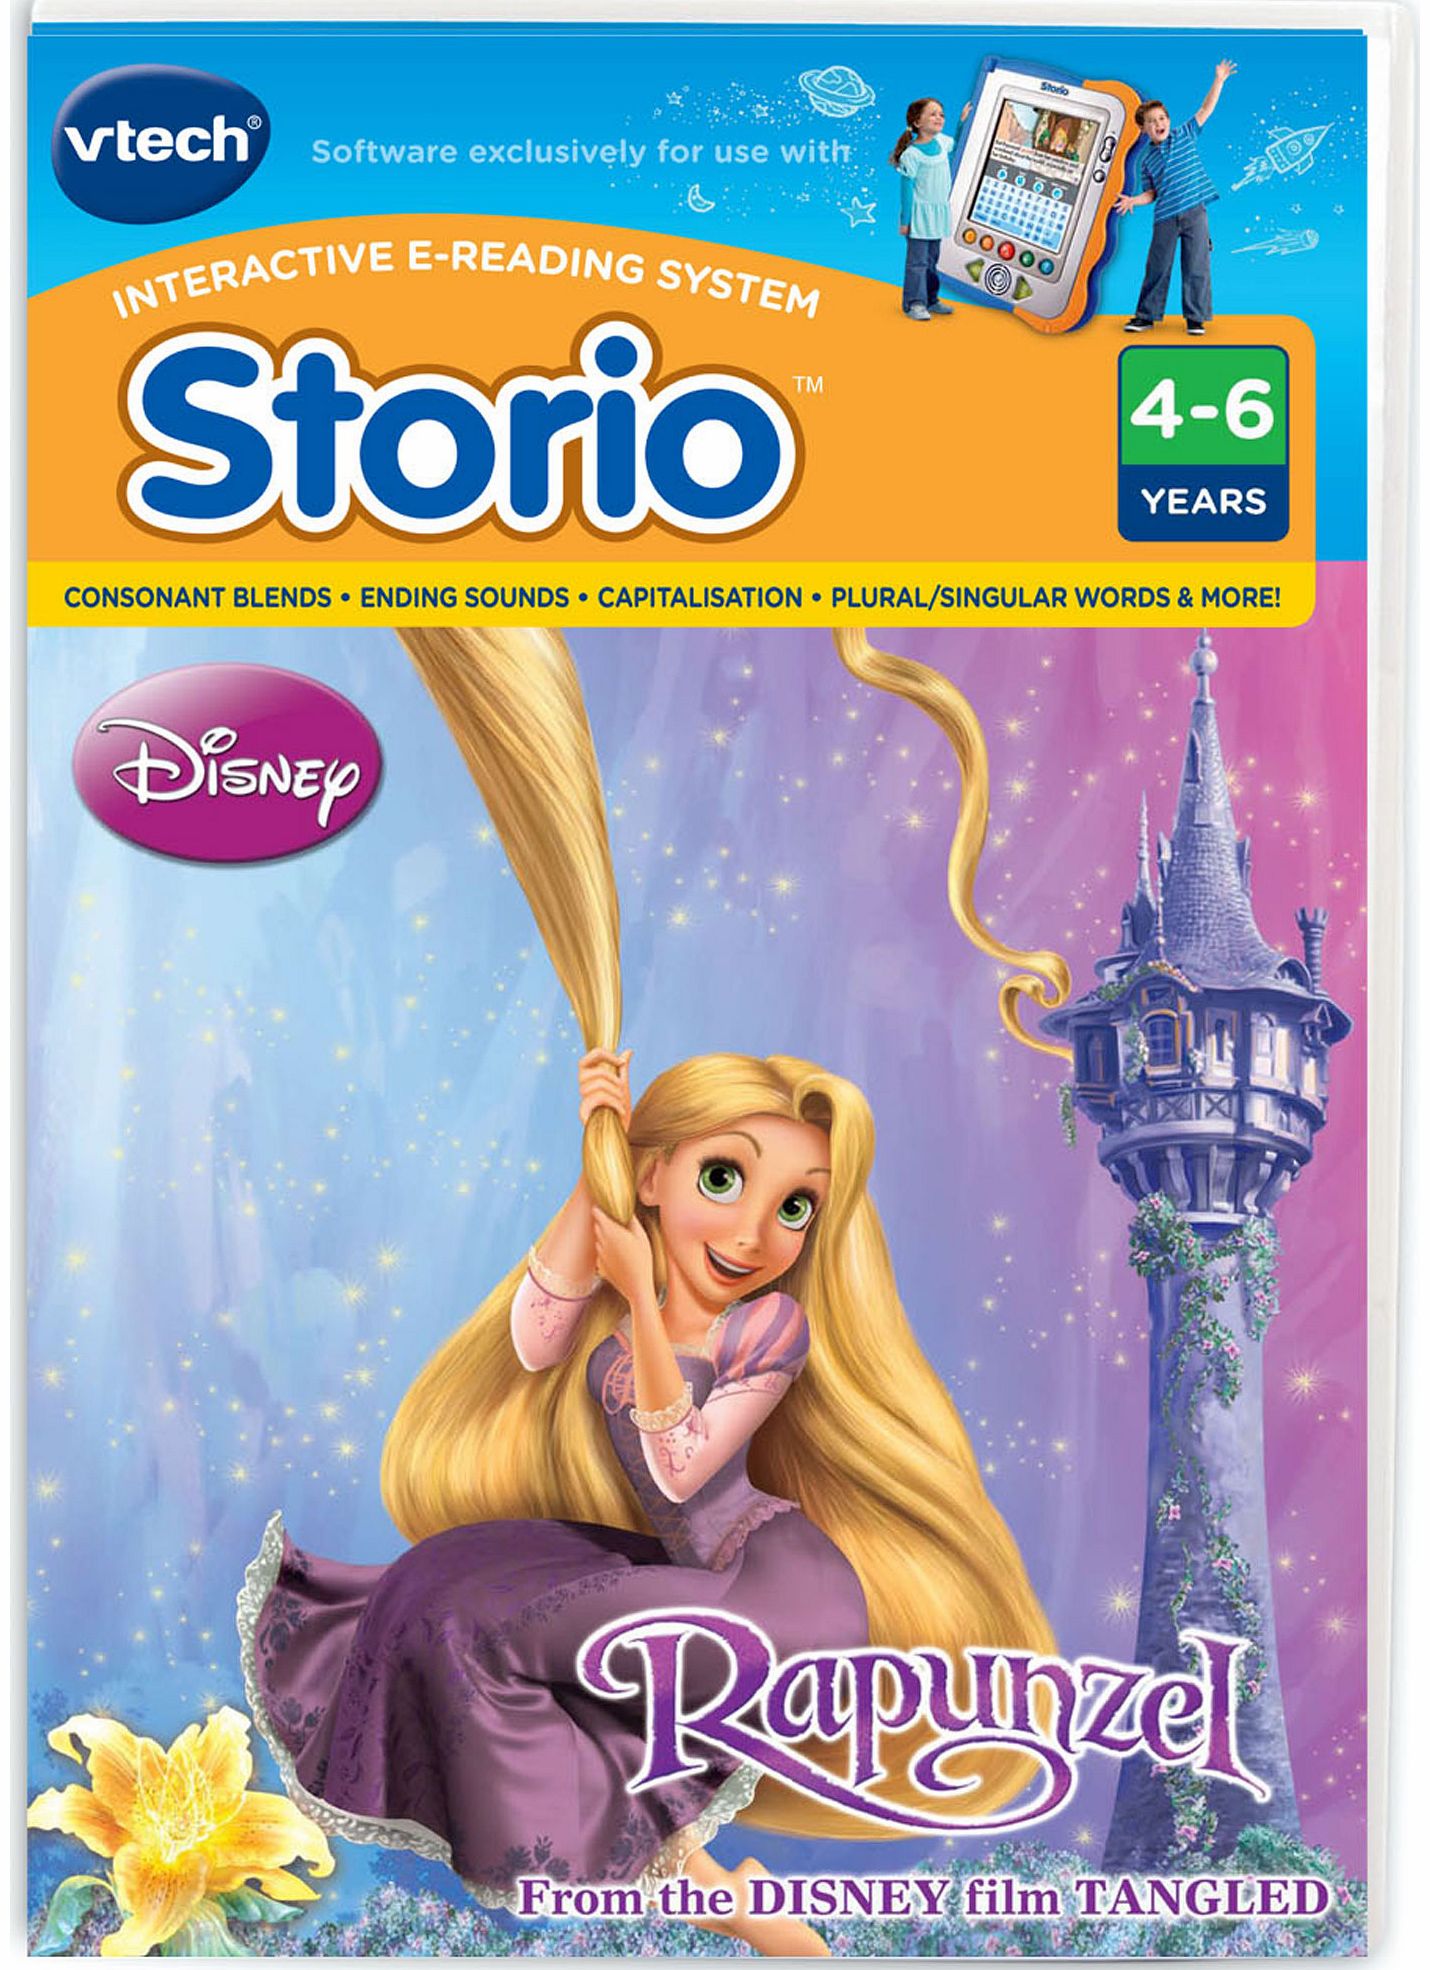 Vtech Storio Software - Disney Princess Tangled